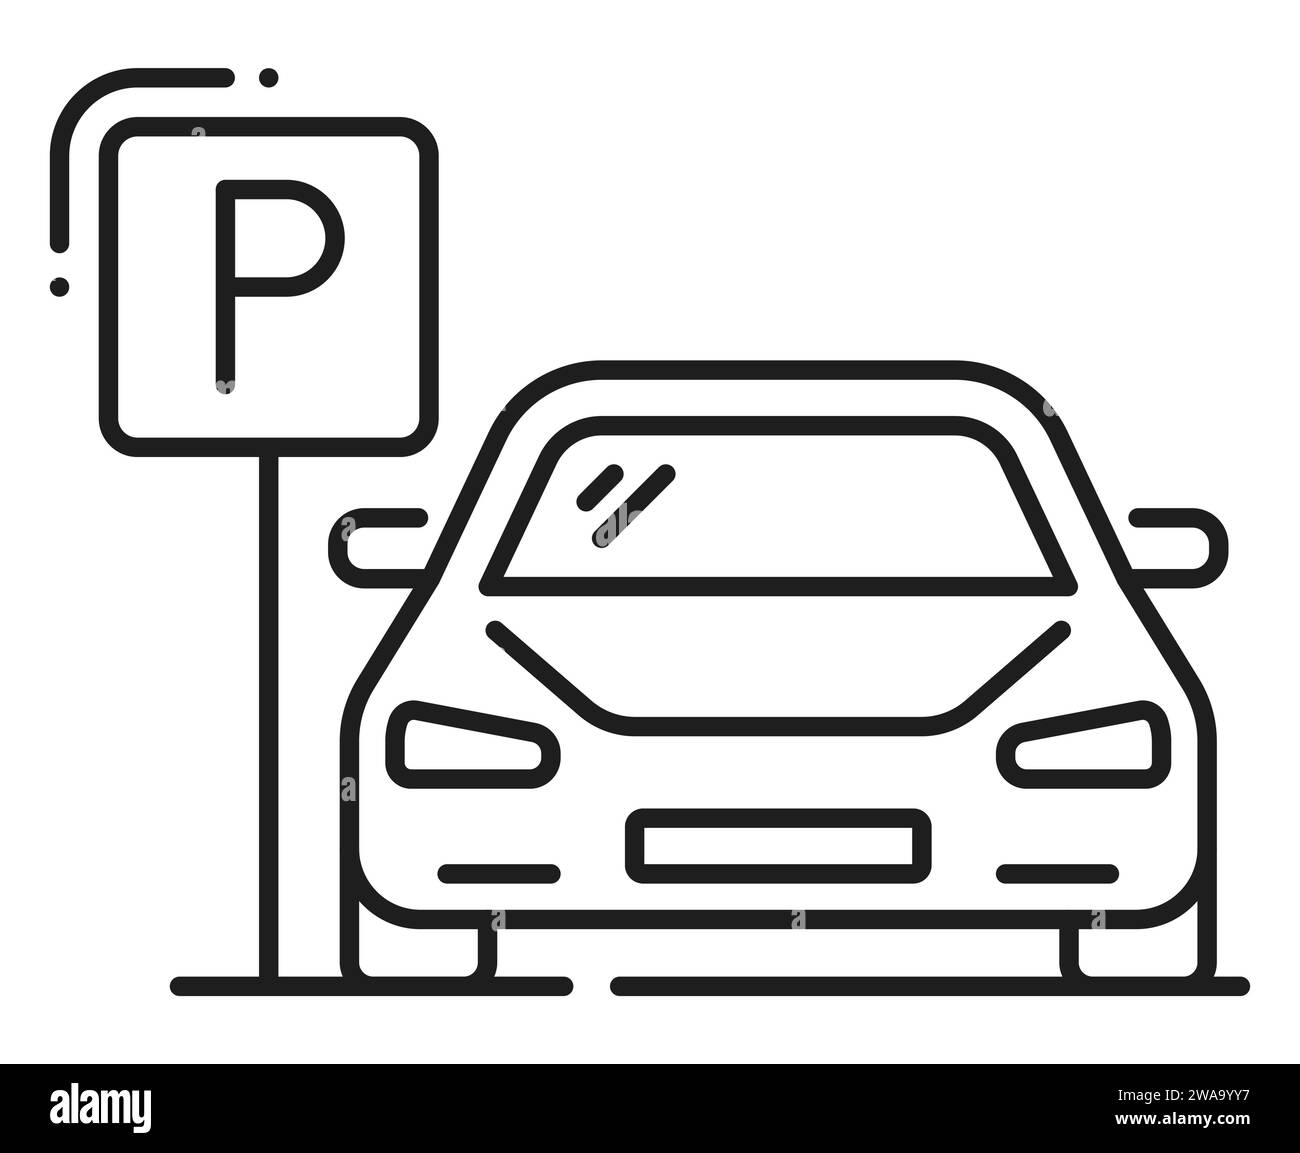 Autoparkplätze, Garagenservice, Symbol für die Beschreibung. Straßenschild für die städtische Verkehrsinfrastruktur, öffentliche Parkzone für Autos oder Symbol für die Straßenlinie oder Piktogramm mit Limousine Auto Stock Vektor